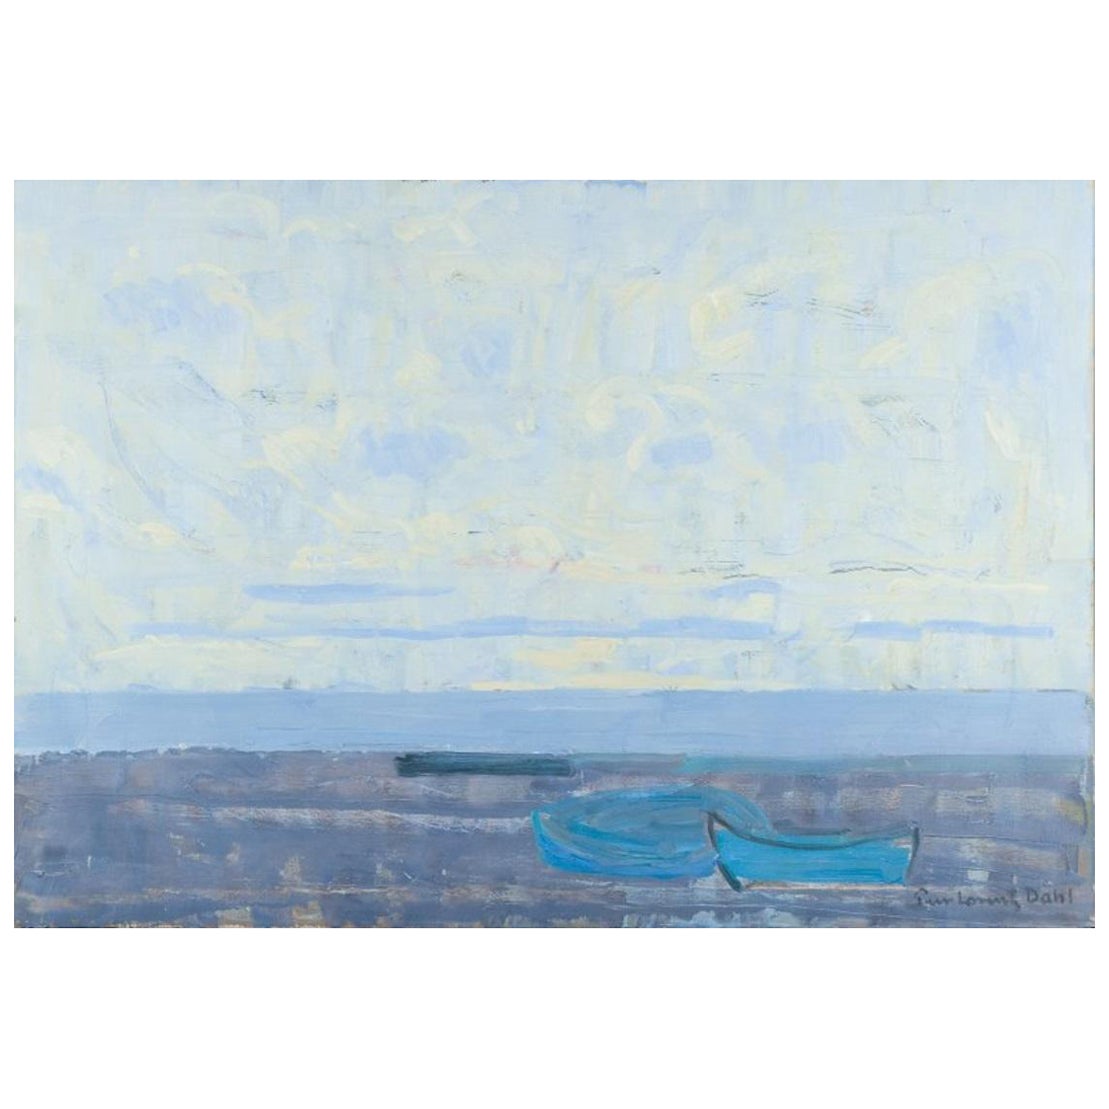 Peer Lorentz Dahl, norwegischer Künstler. Öl auf Leinwand. Modernistischer Blick auf den Strand